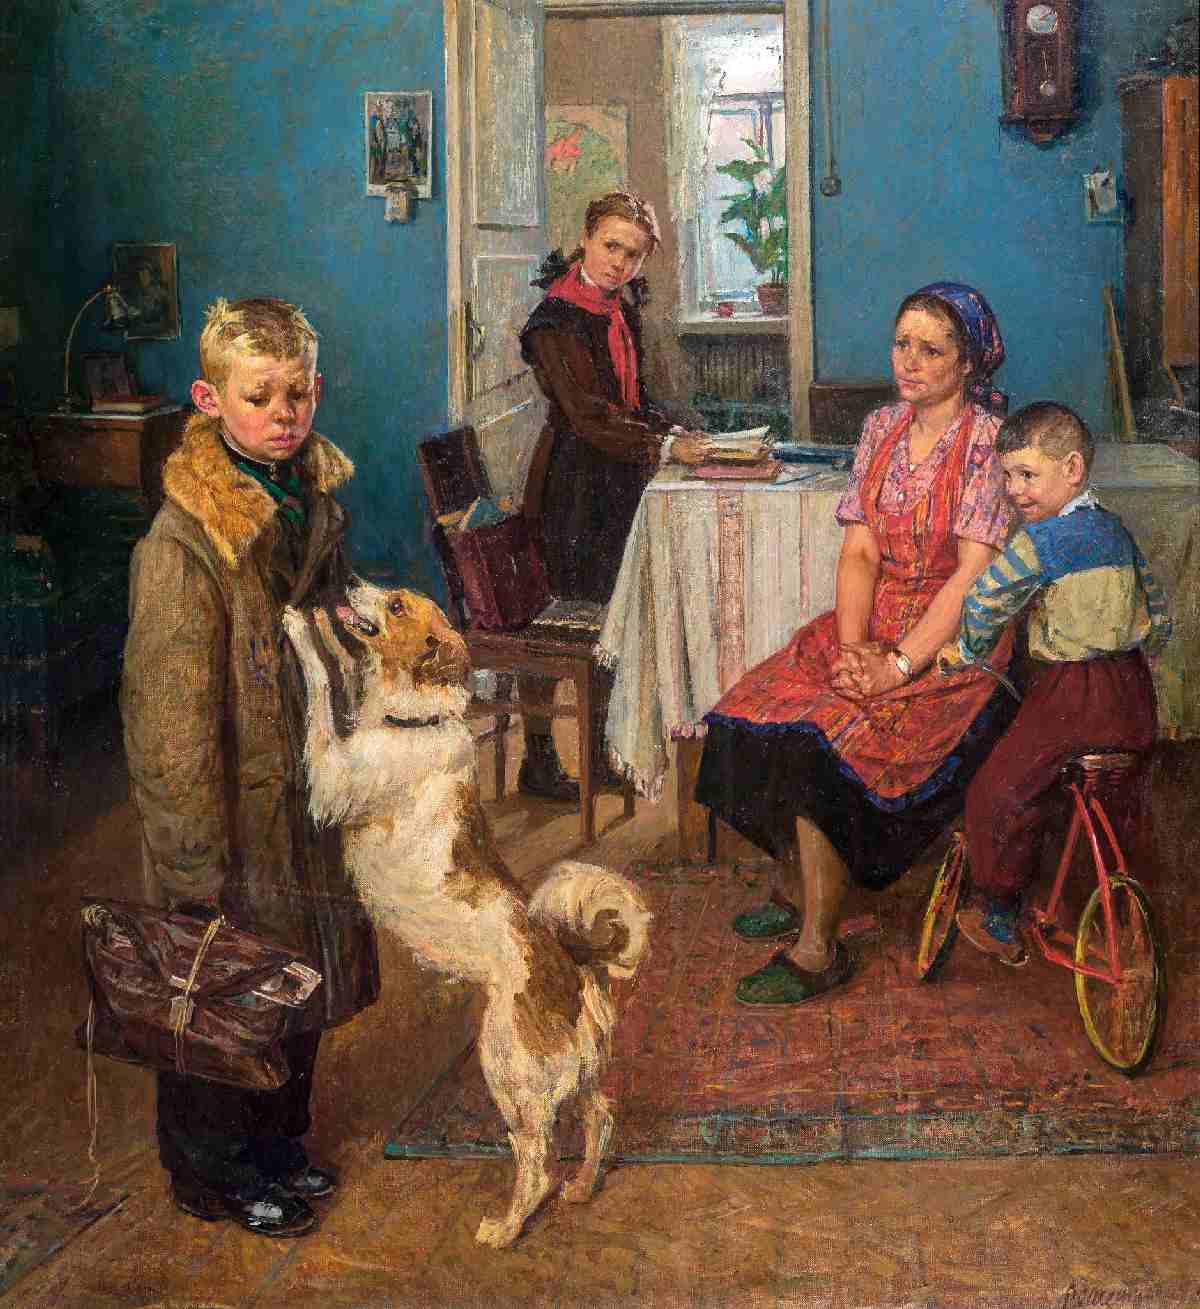 Название знаменитой картины Федора Решетникова «Опять двойка» (1952 год) стало возможным после введения в школах цифровых оценок